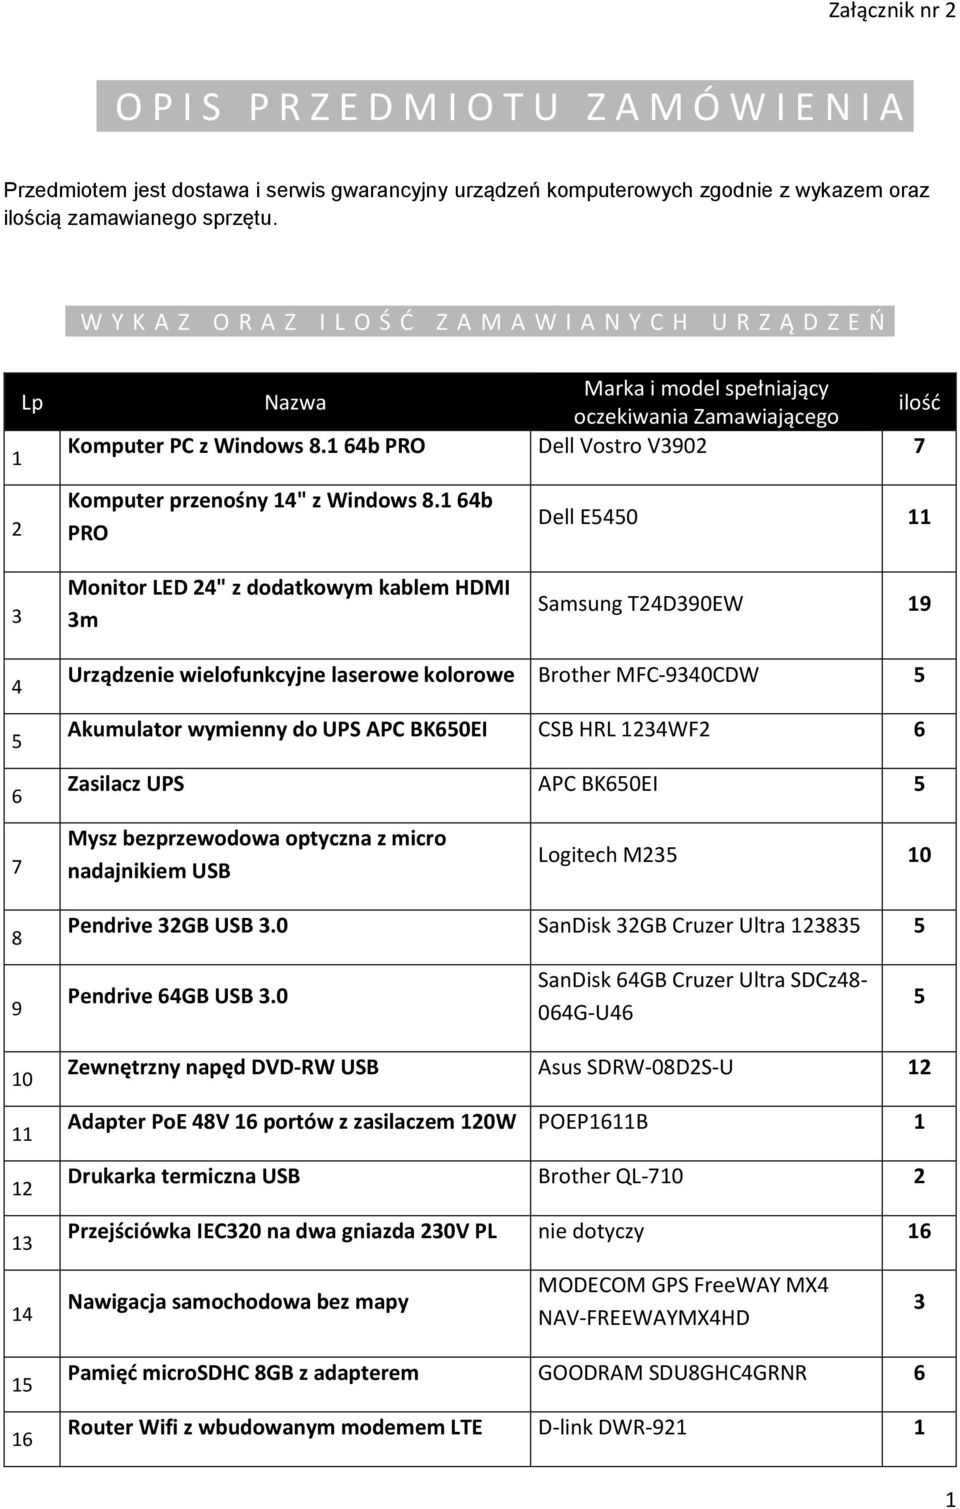 1 64b PRO Dell Vostro V3902 7 Komputer przenośny 14" z Windows 8.